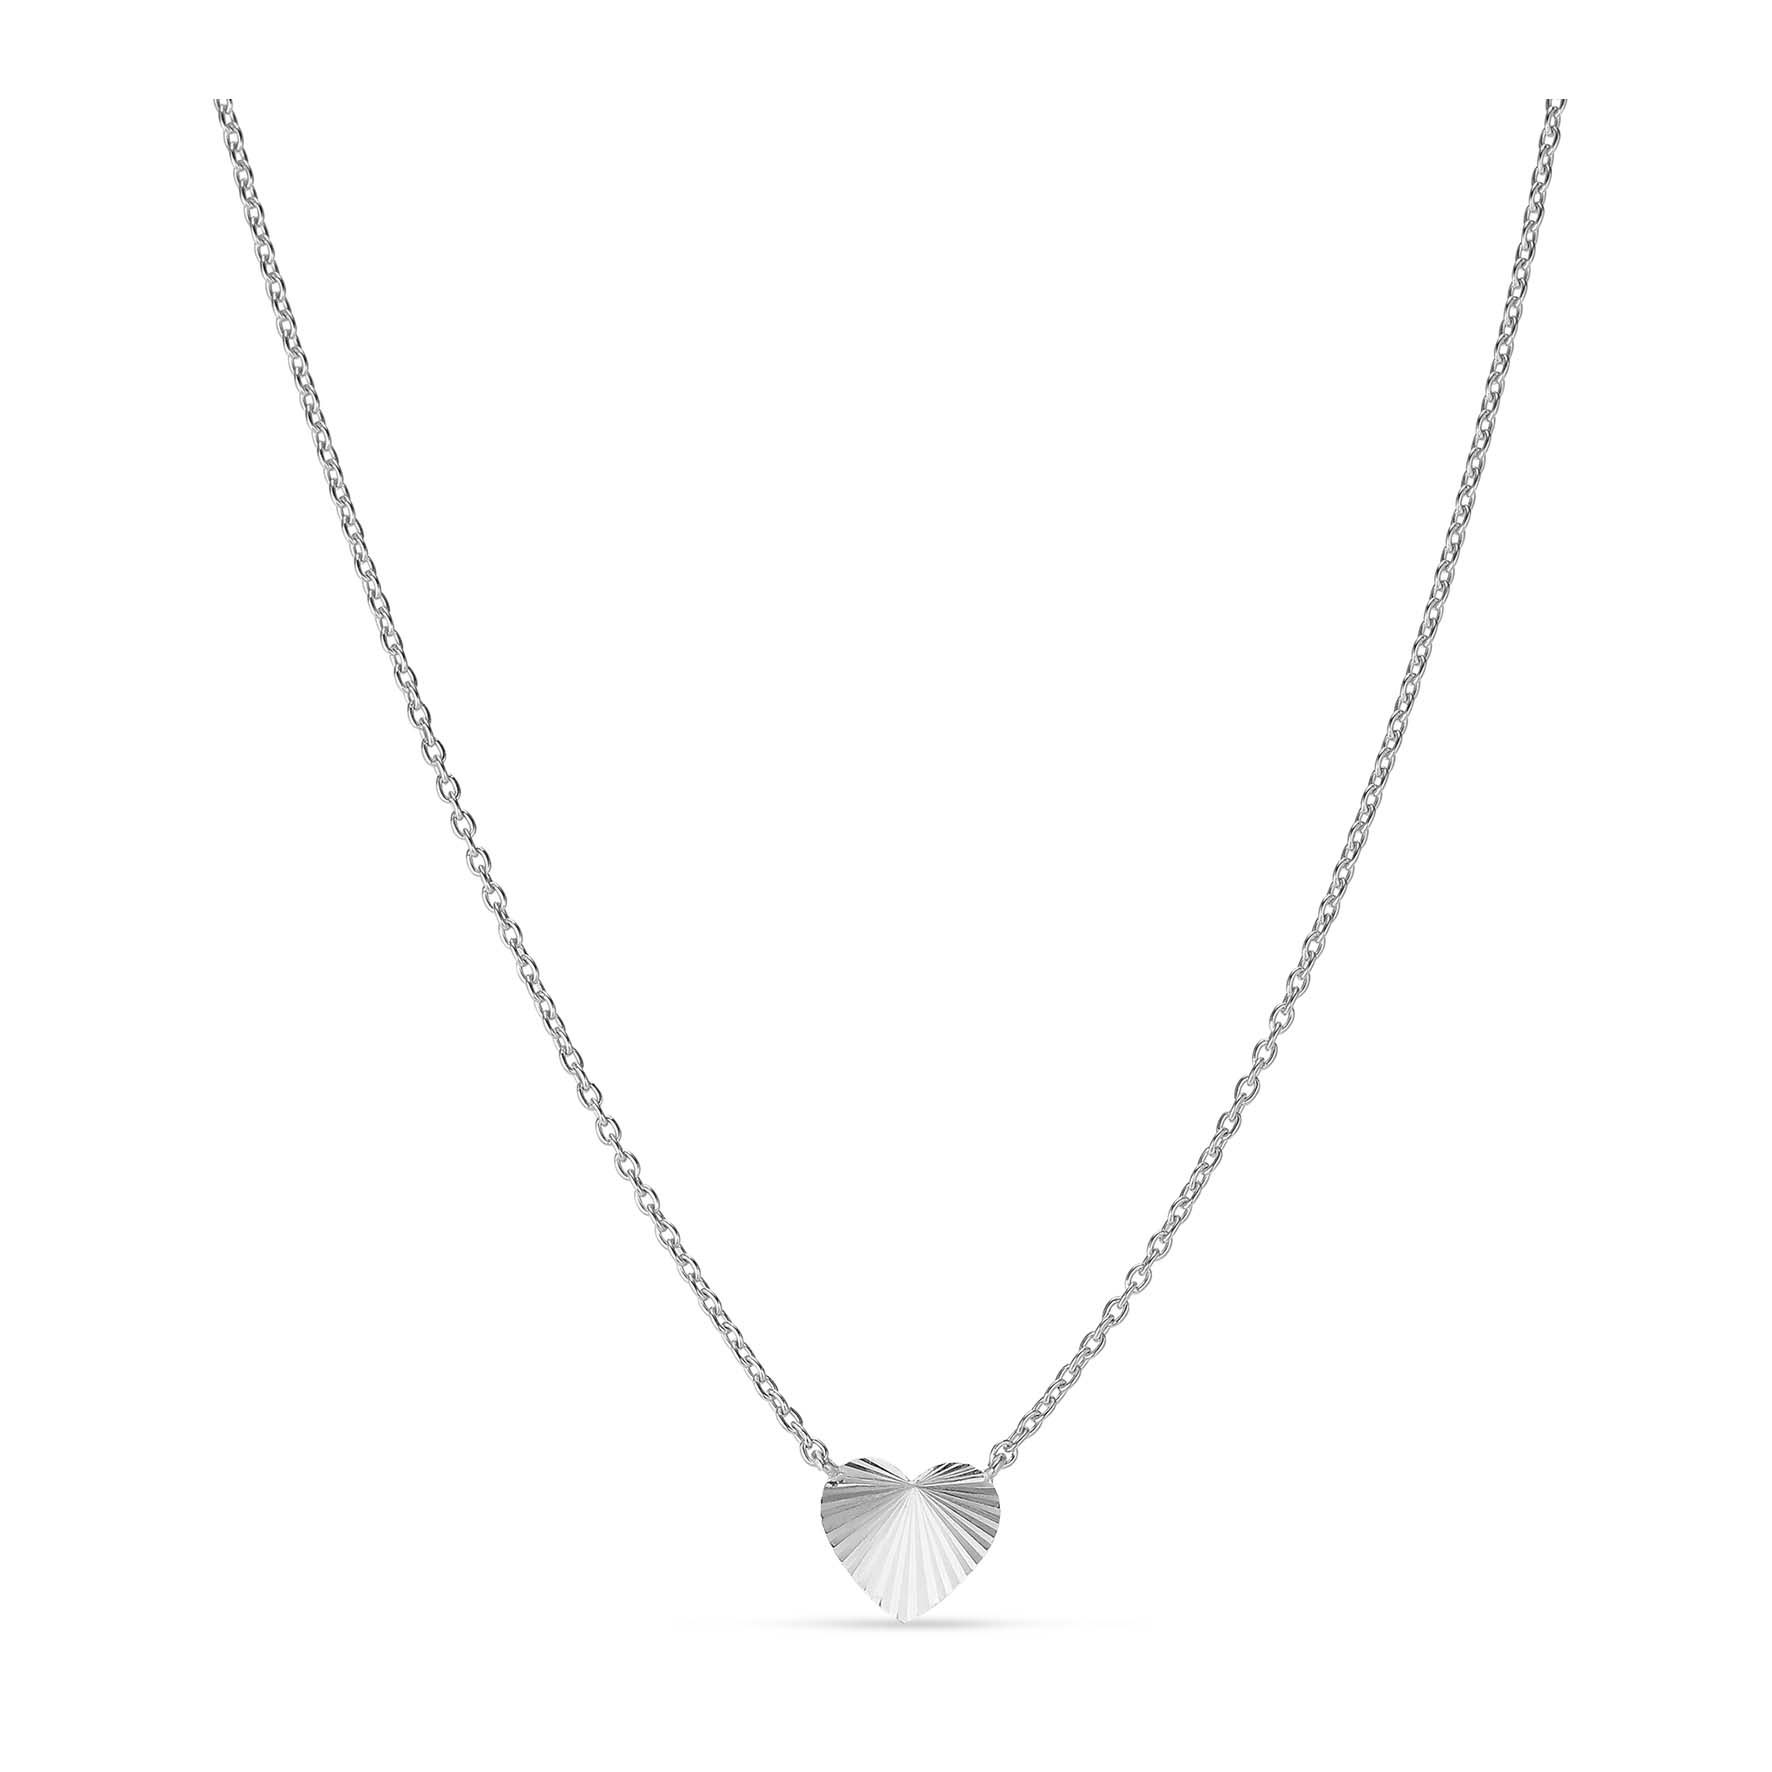 Reflection Heart Necklace från Jane Kønig i Silver Sterling 925